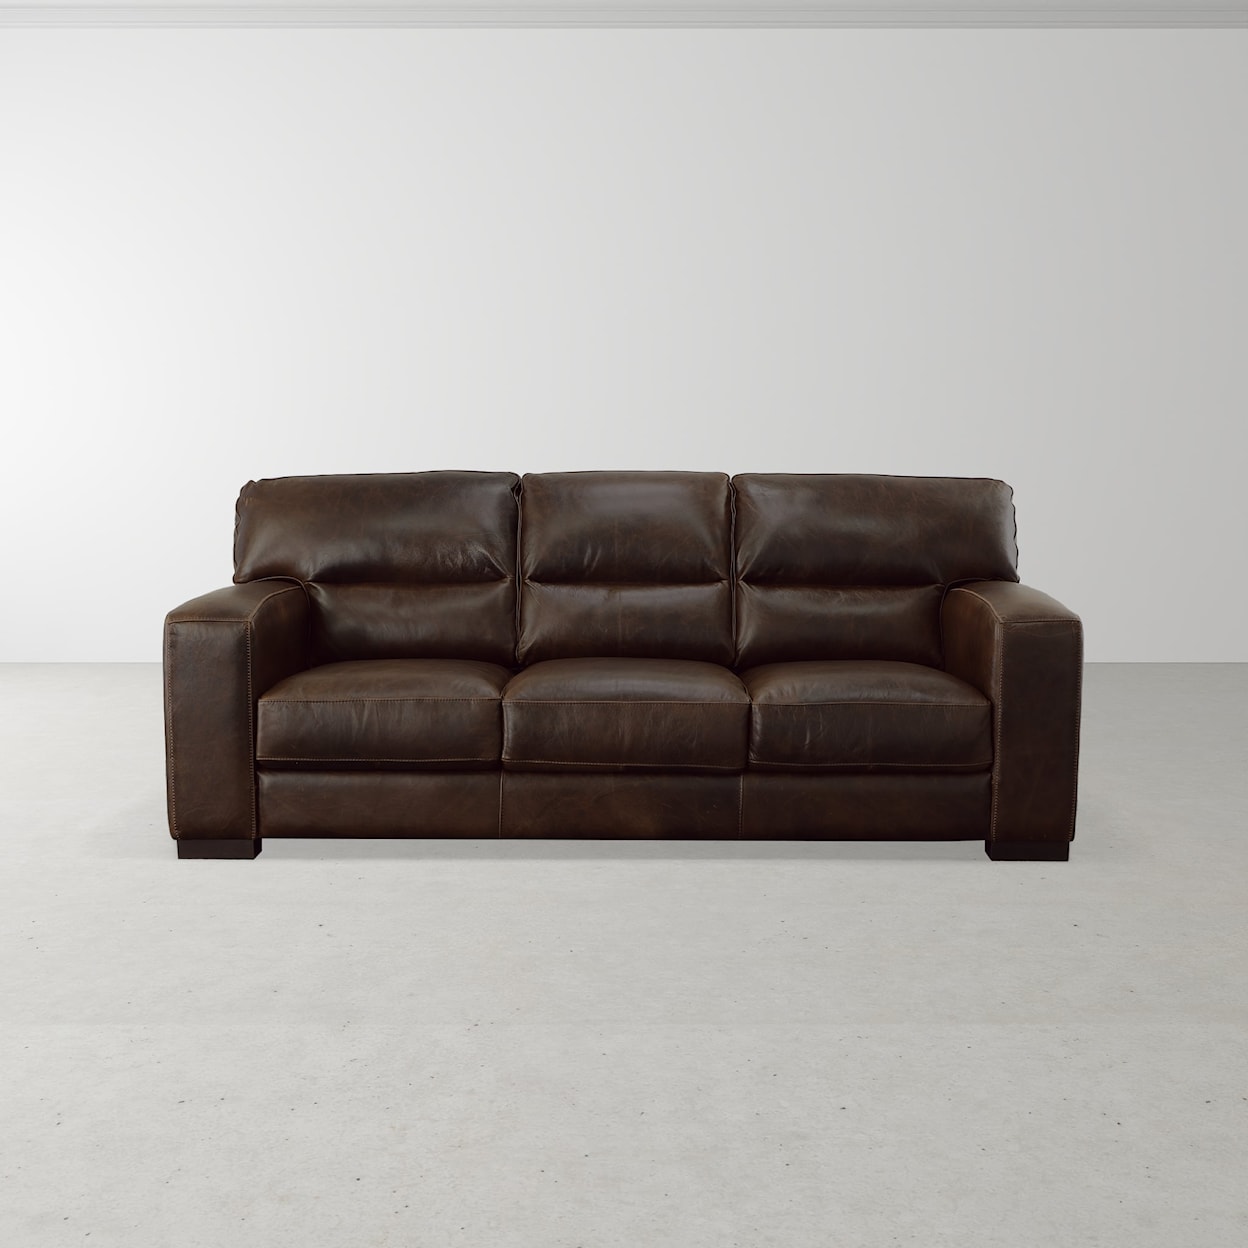 Virginia Furniture Market Premium Leather Brescia Sofa